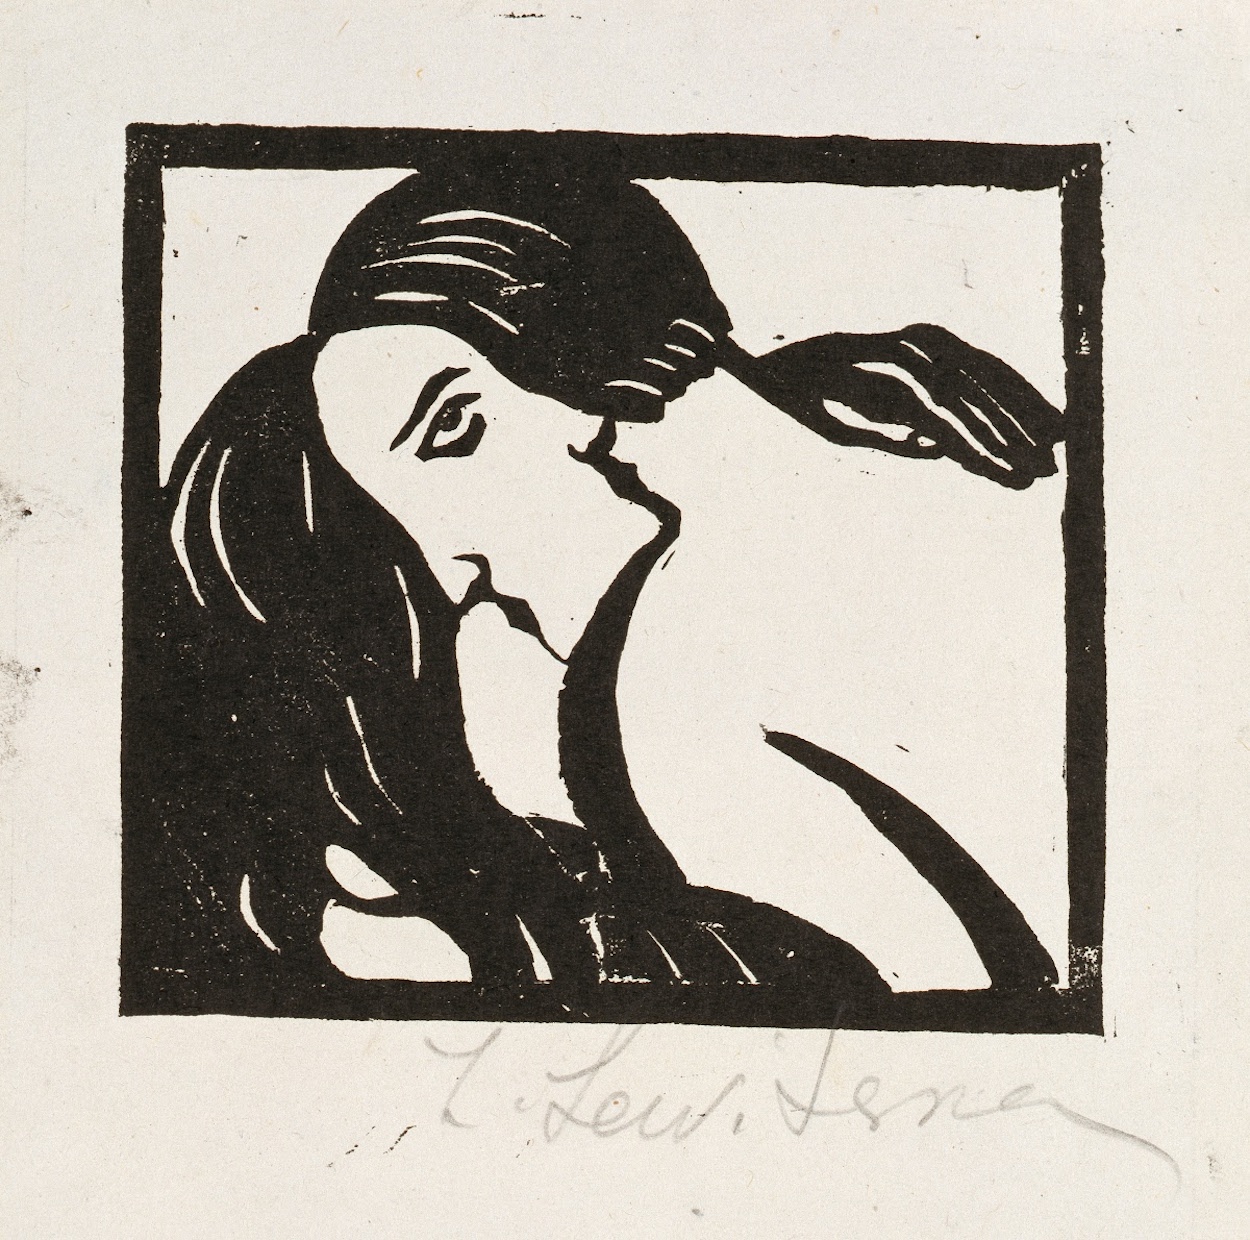 キス by Sofia Levytska - 1920年代 - 5.3 x 13.5 cm 